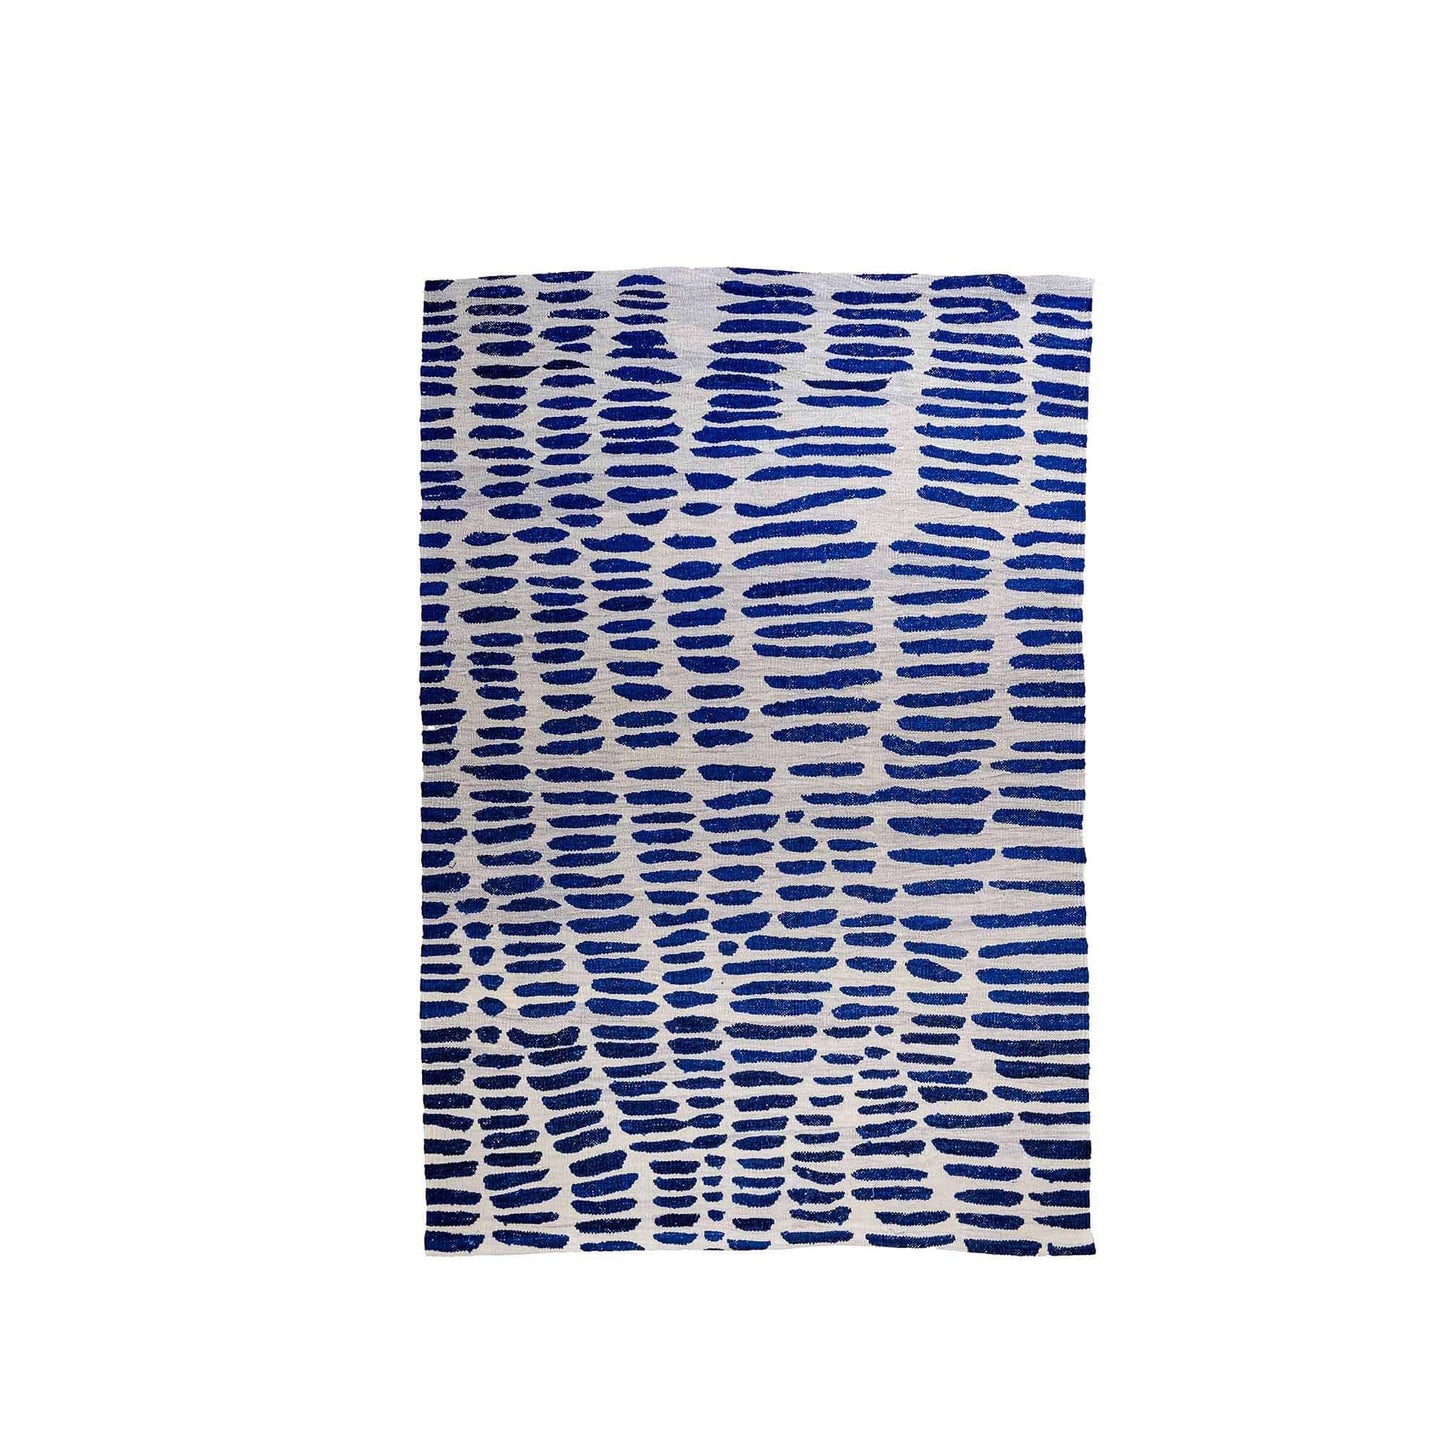 Handwoven rug: "365 DAYS", by Zeynep Adil TheKeep